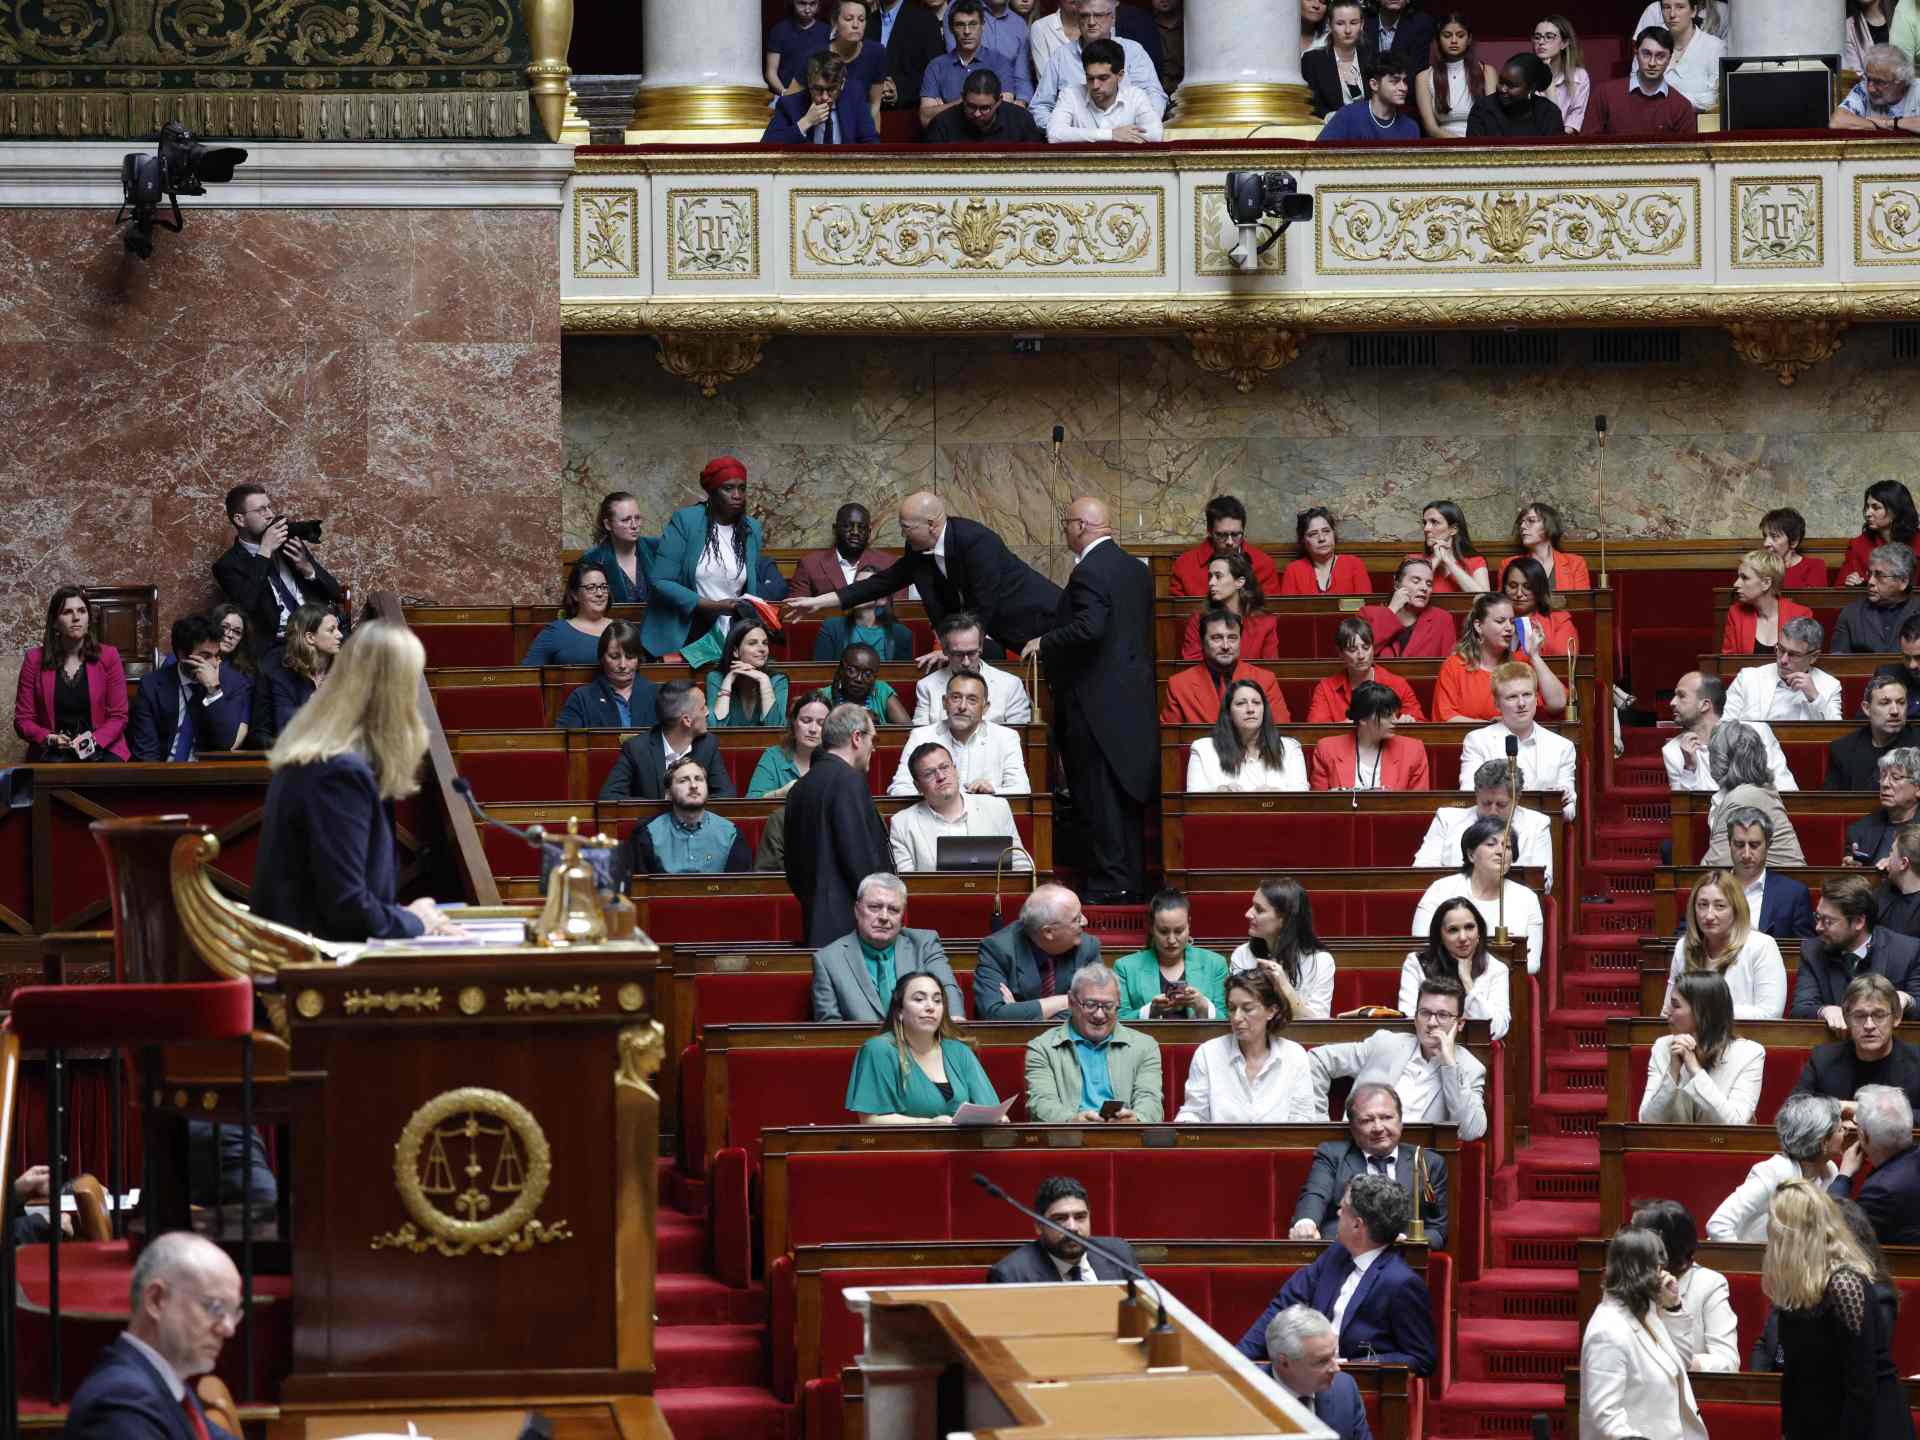 احتفاء برفع علم فلسطين داخل البرلمان الفرنسي للمرة الثانية | أخبار – البوكس نيوز